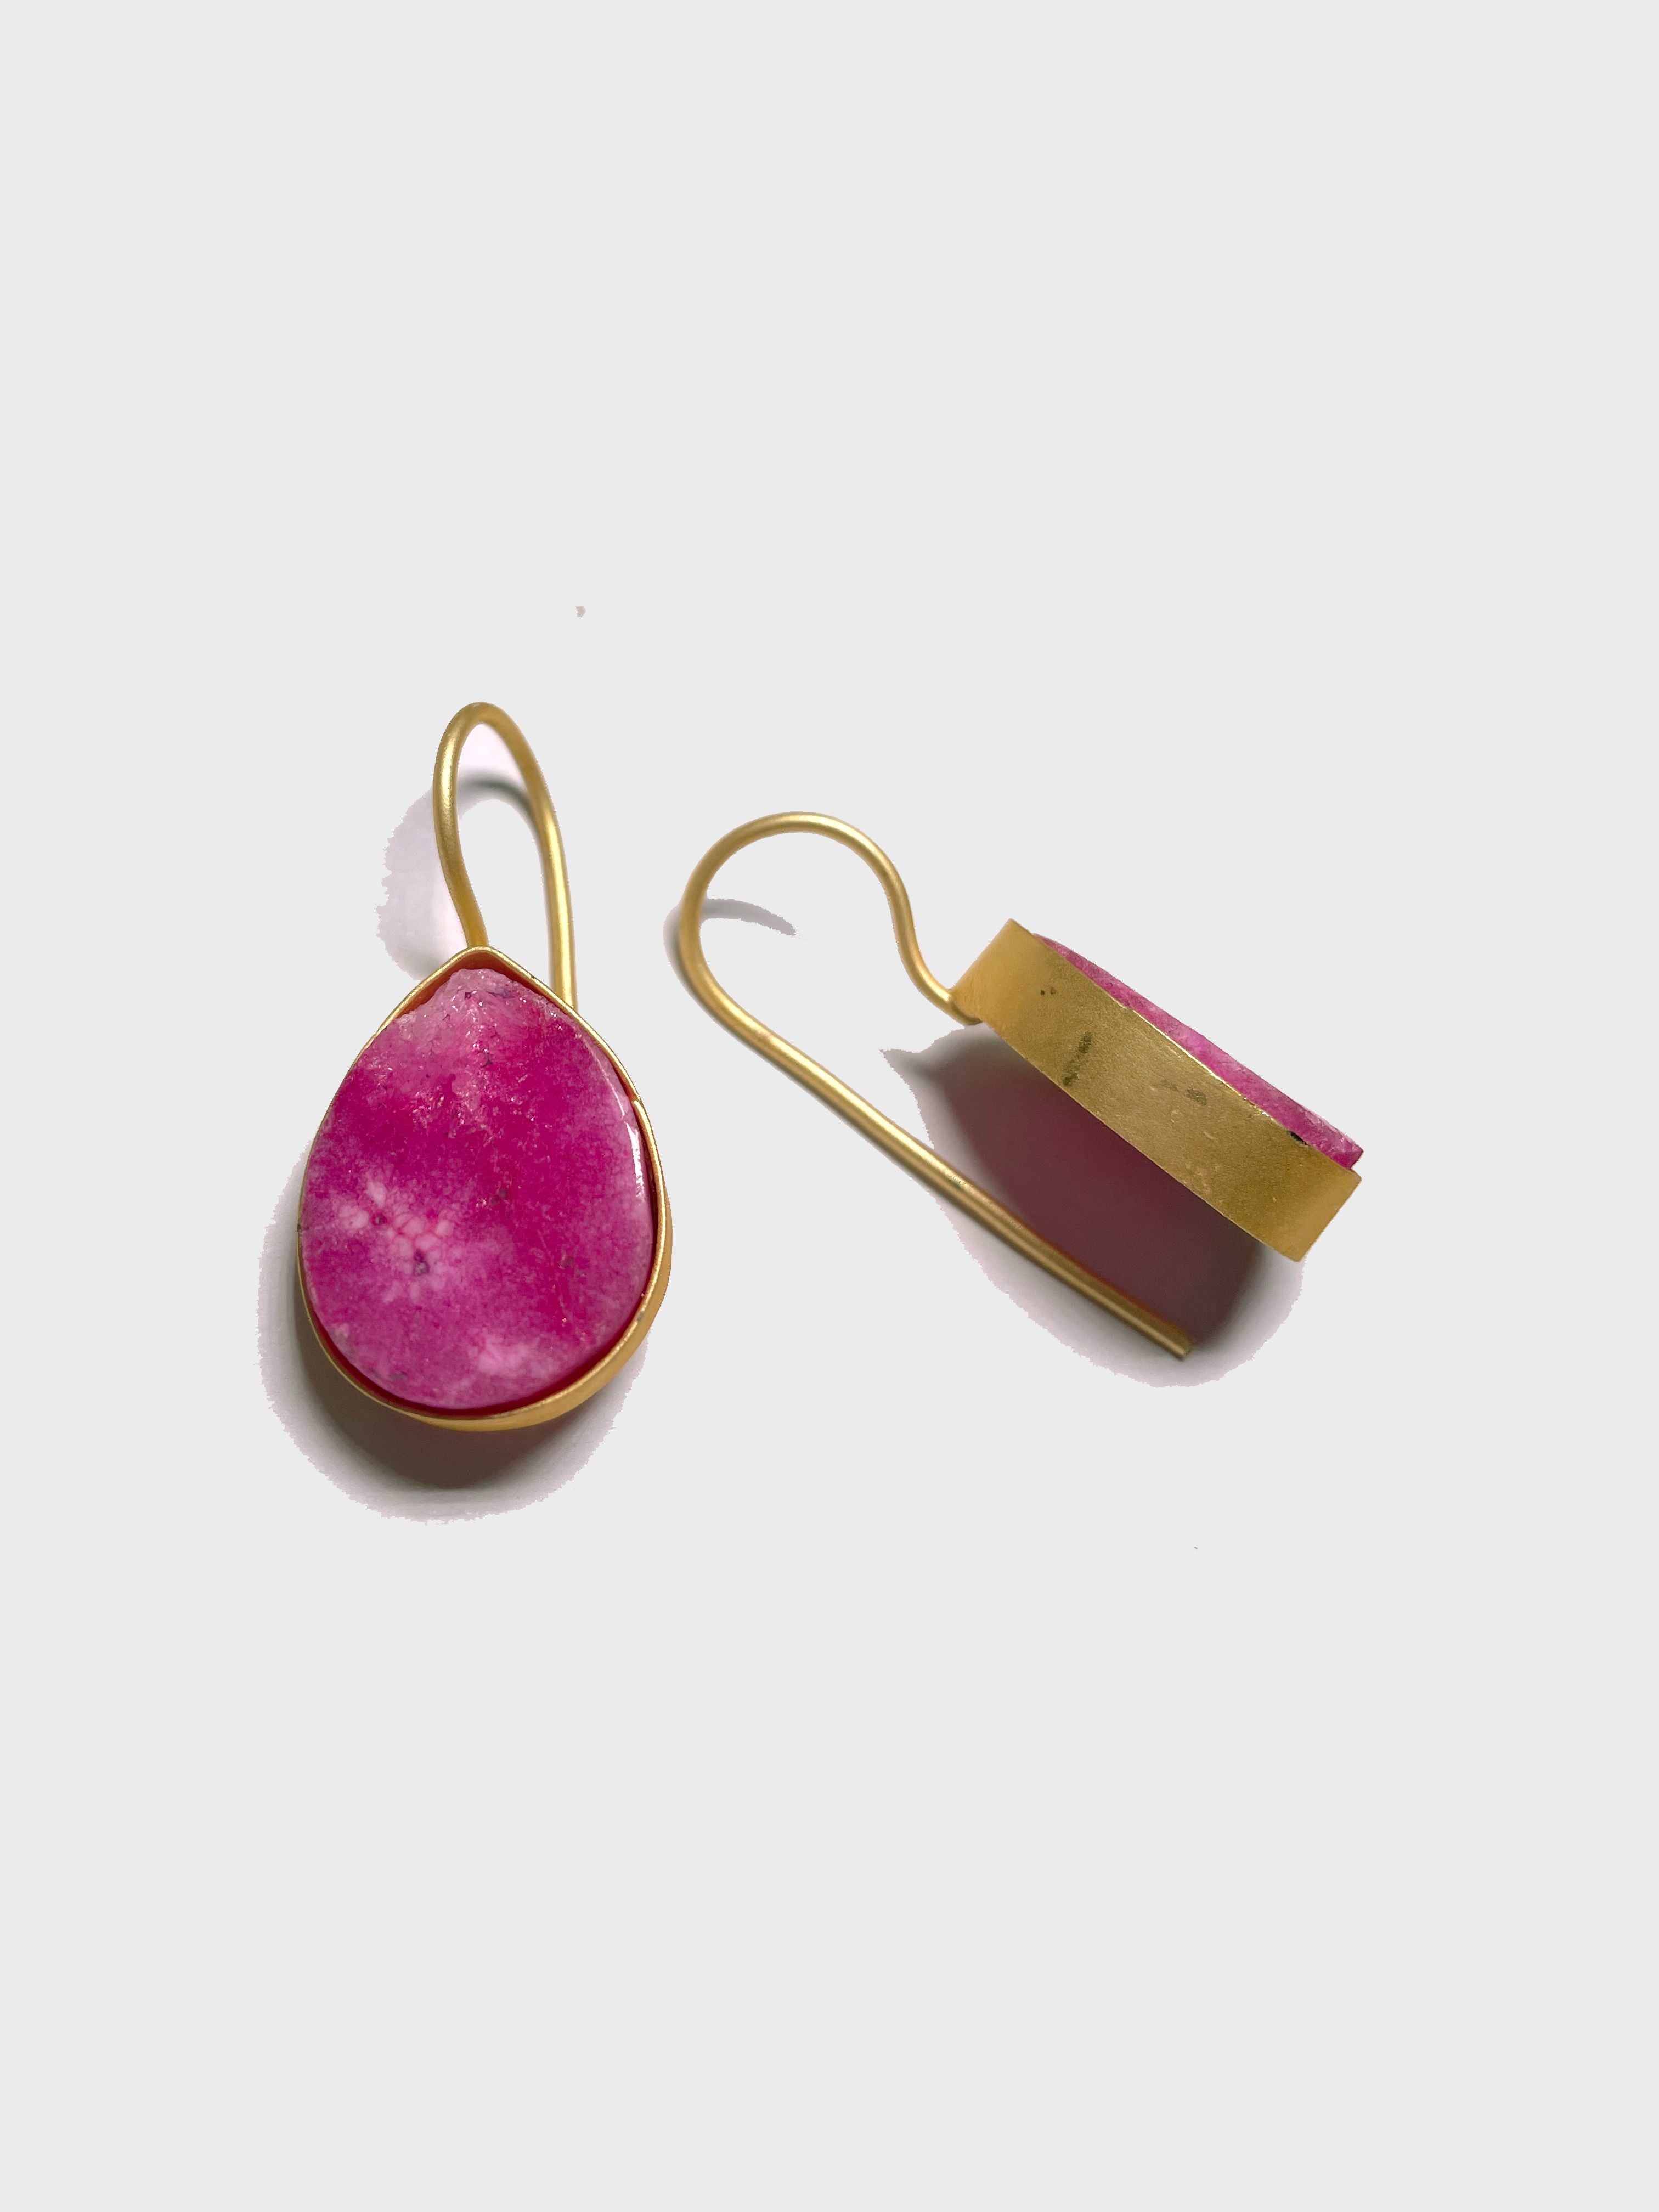 Bloodstone earrings, natural stone Earrings, statement earring — San José  Made